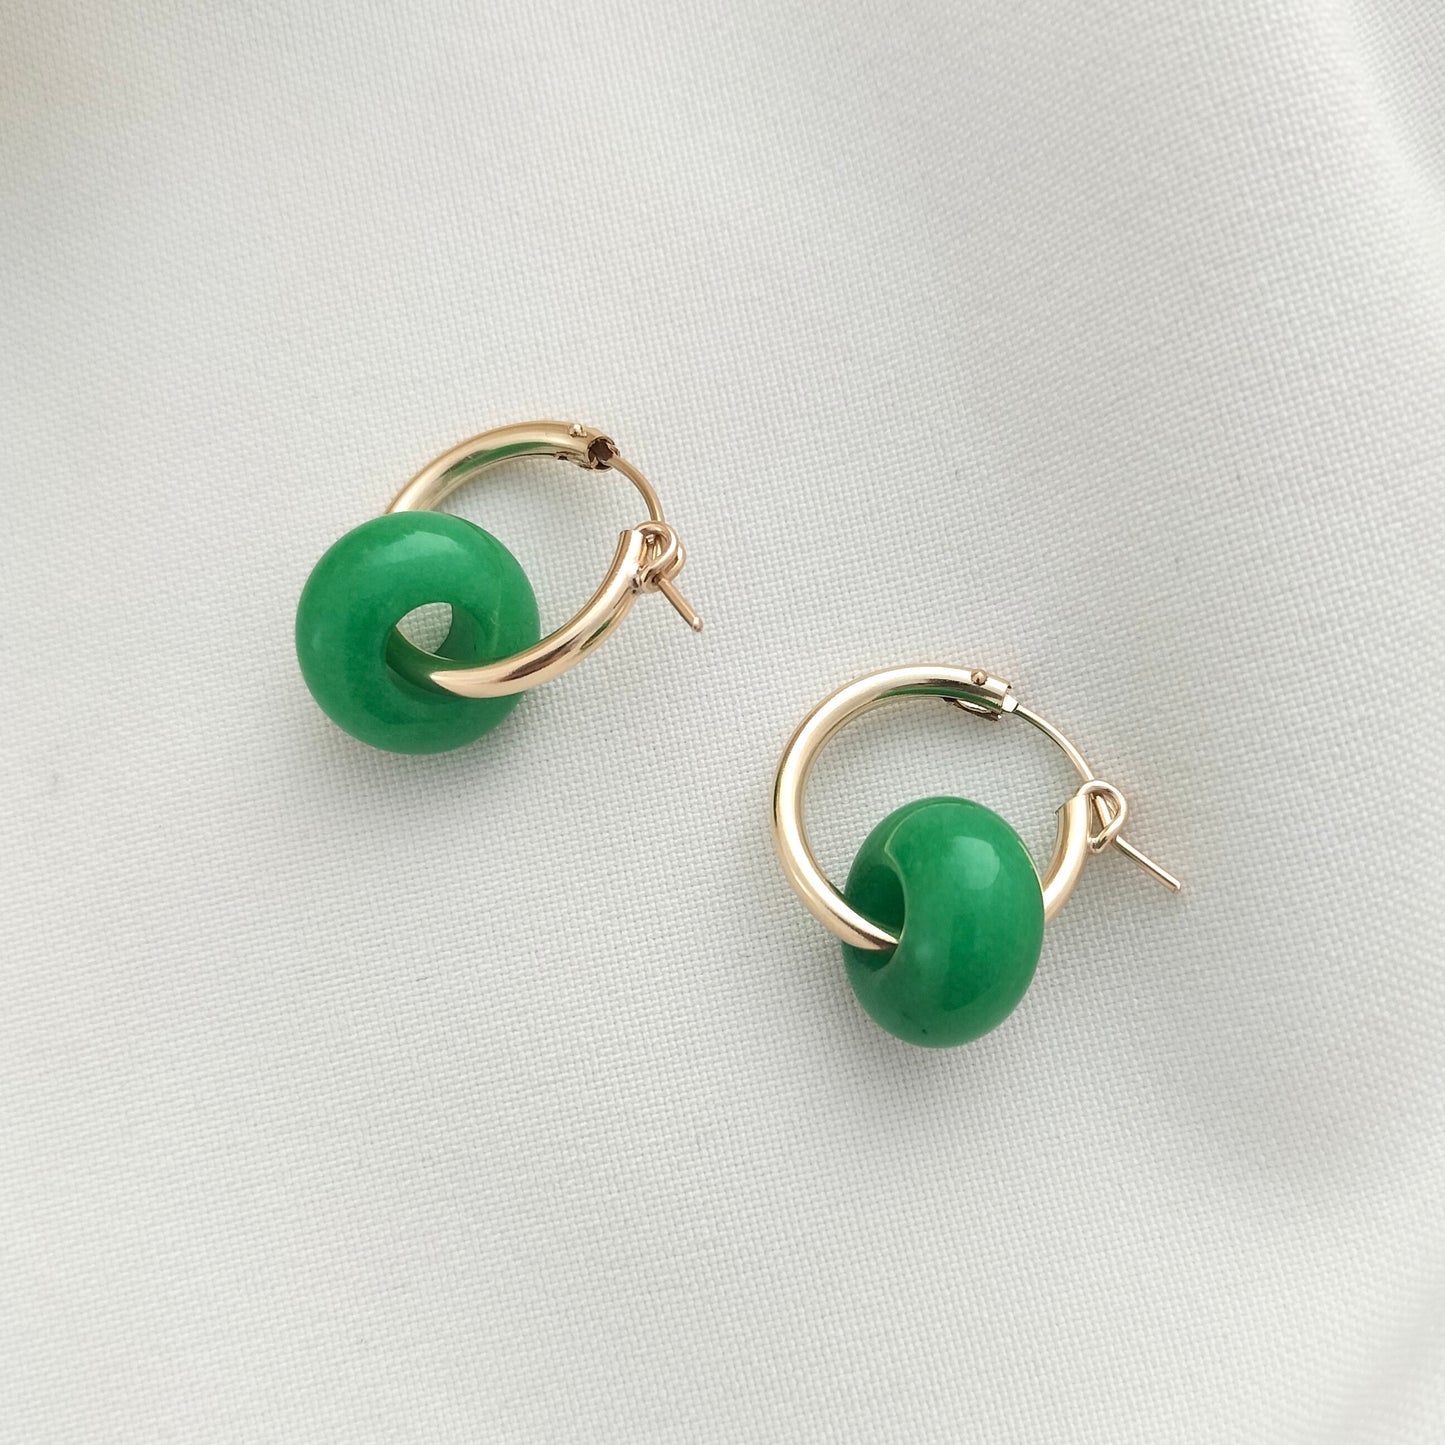 Gold hoop earrings with green jade beads